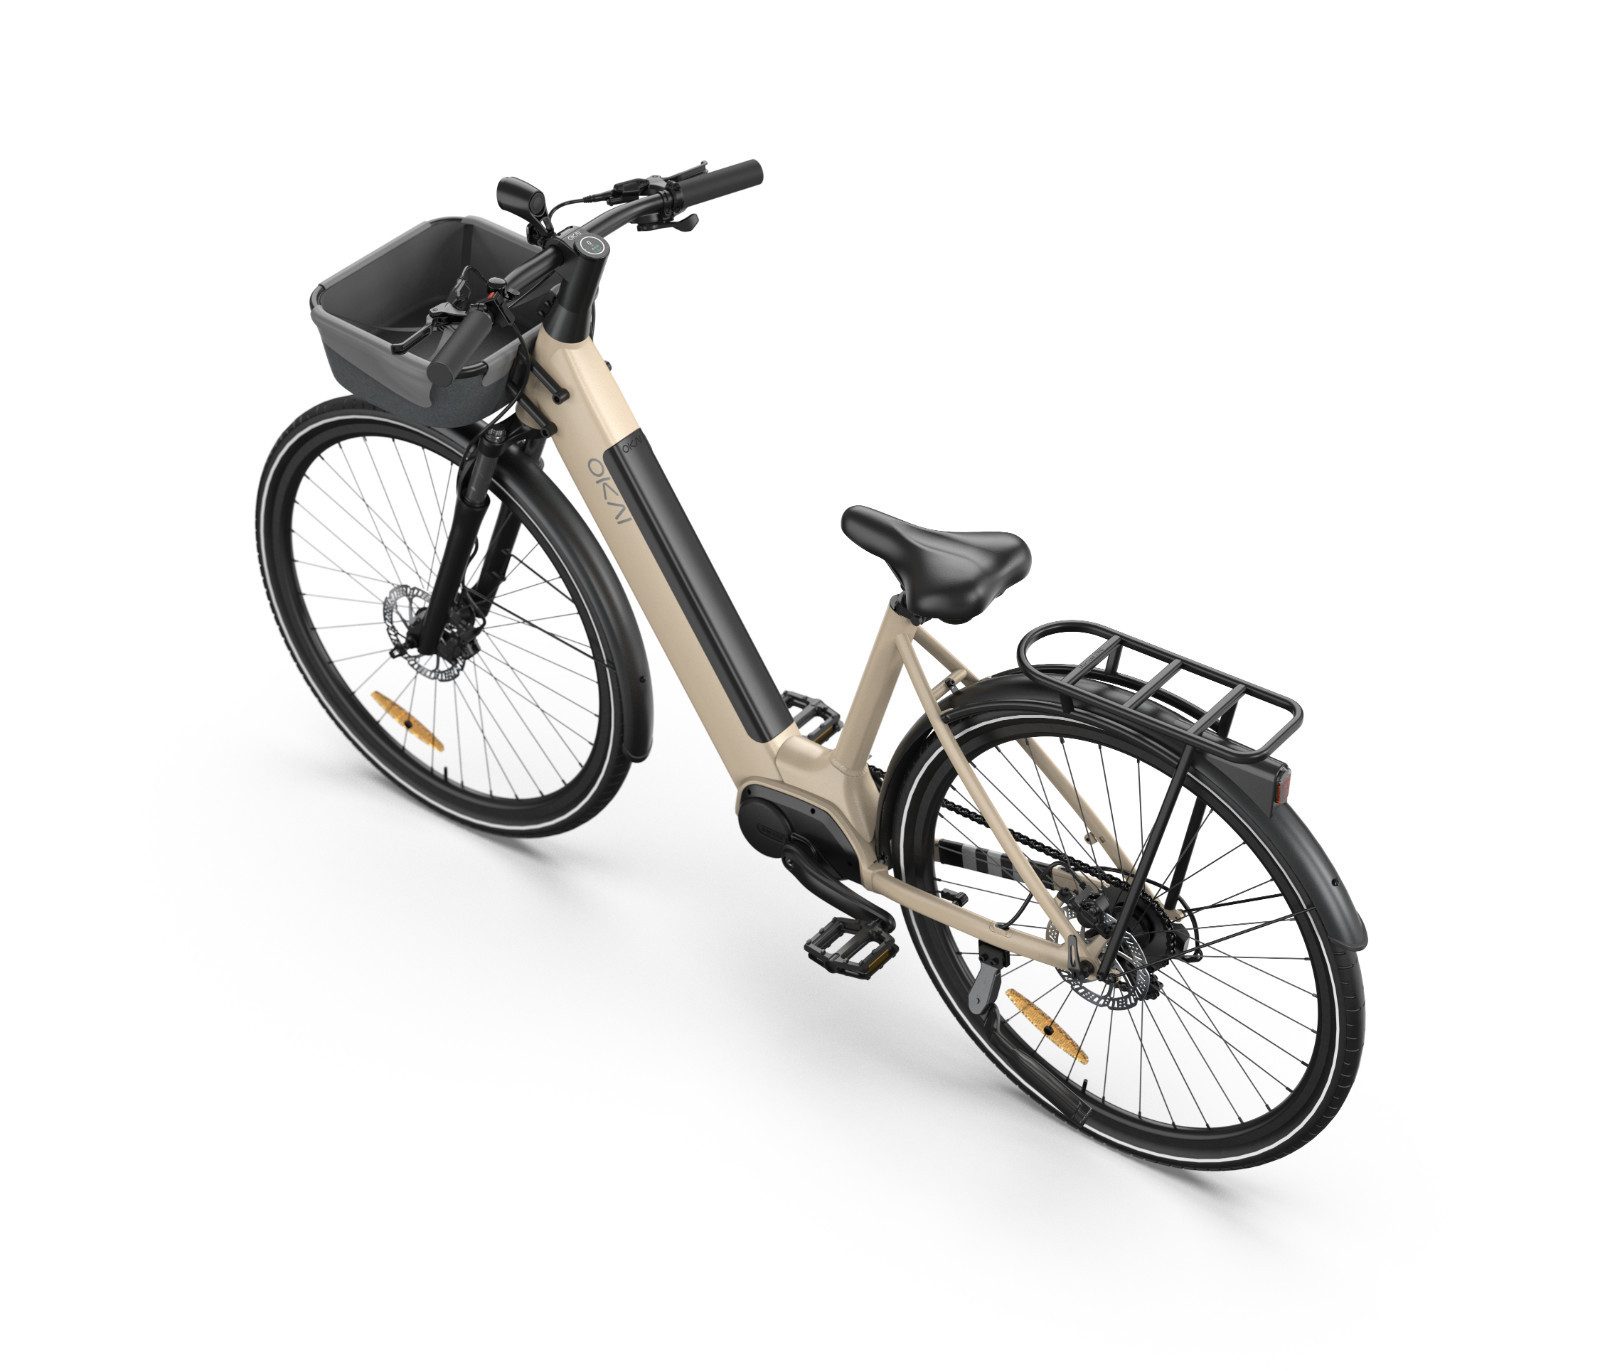 OKAI S-Pedelec Elektrofahrrad Fahrrad 28" 250W E-Bike BAFANG Motor, 9 Gang, Bafang Mittelmotor